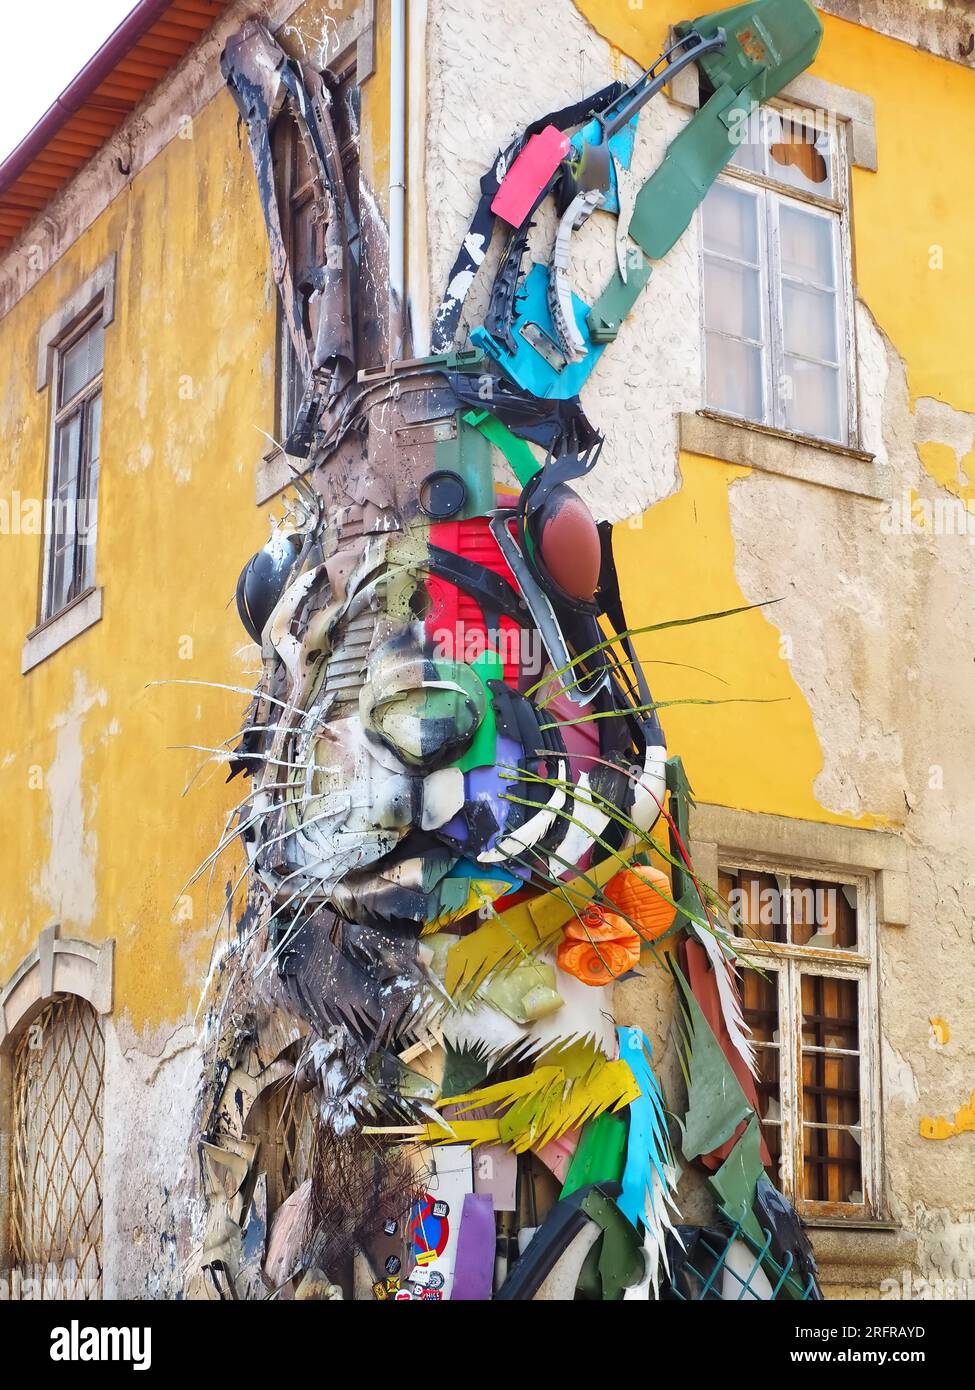 Half rabbit sculpture by Bordalo II in Gaia near Porto, Portugal Stock  Photo - Alamy